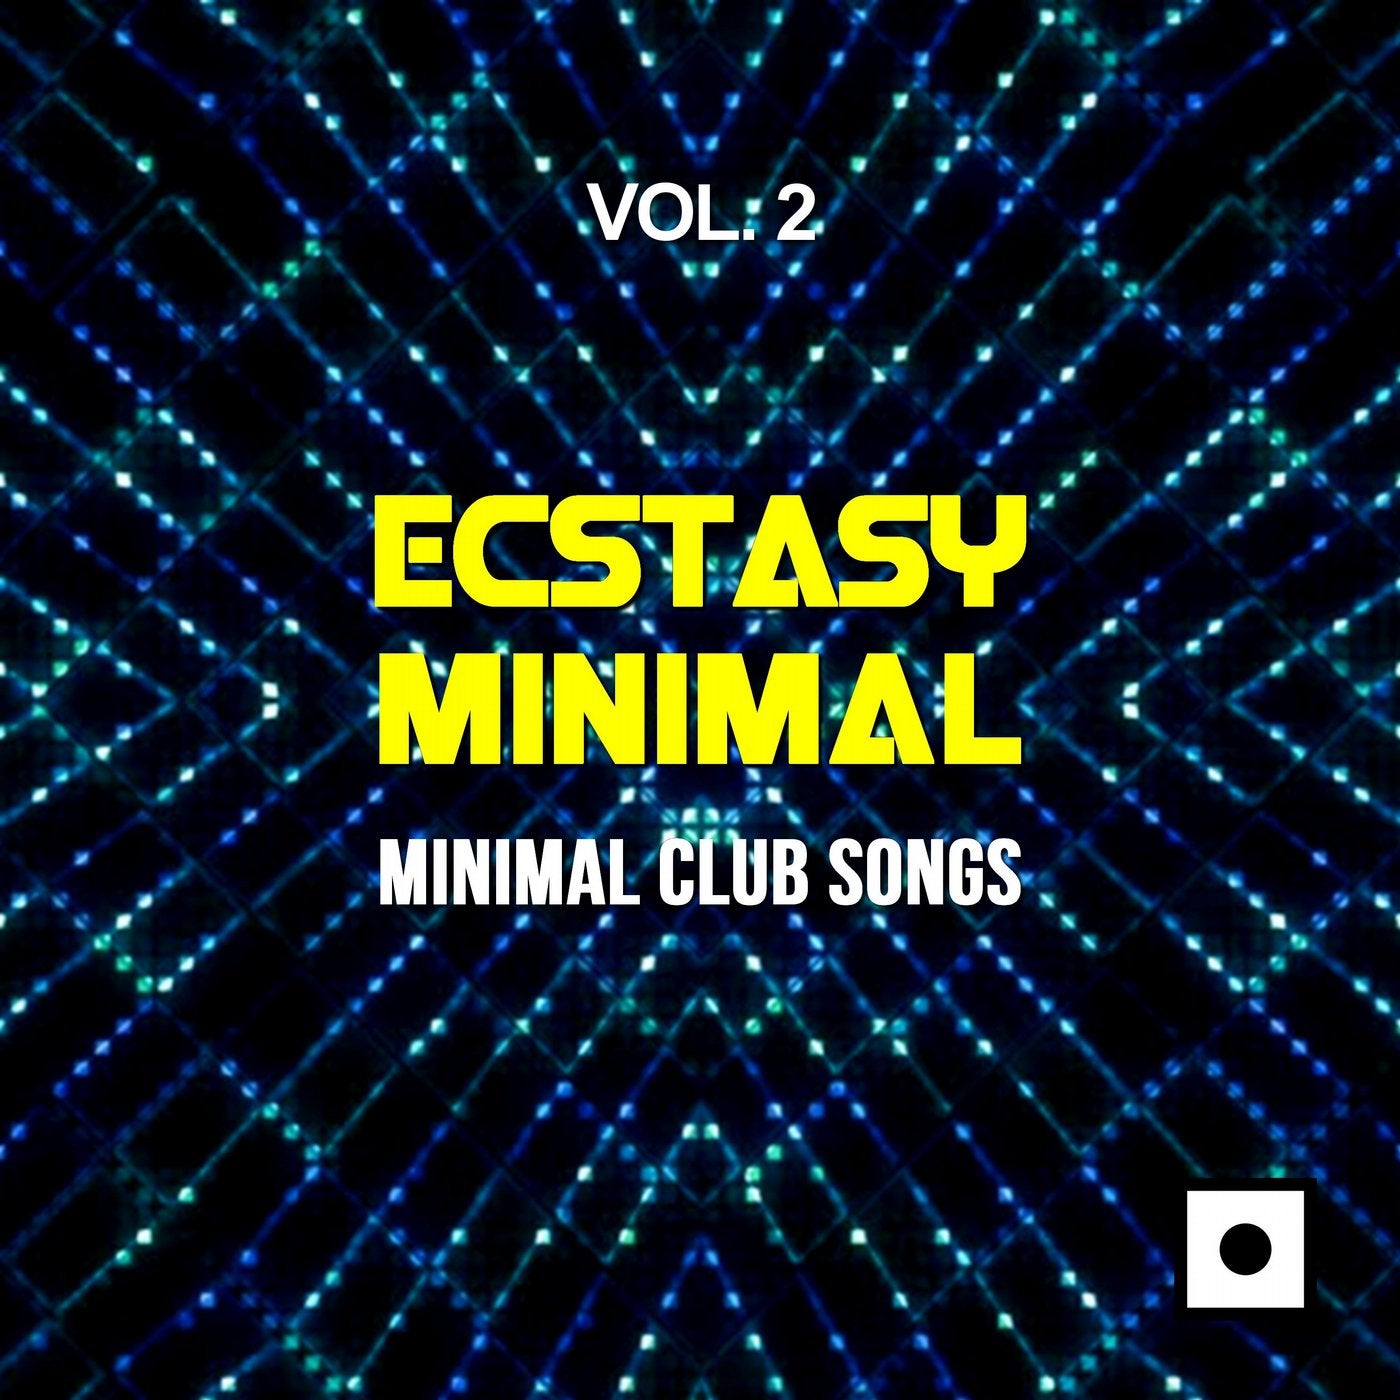 Ecstasy Minimal, Vol. 2 (Minimal Club Songs)